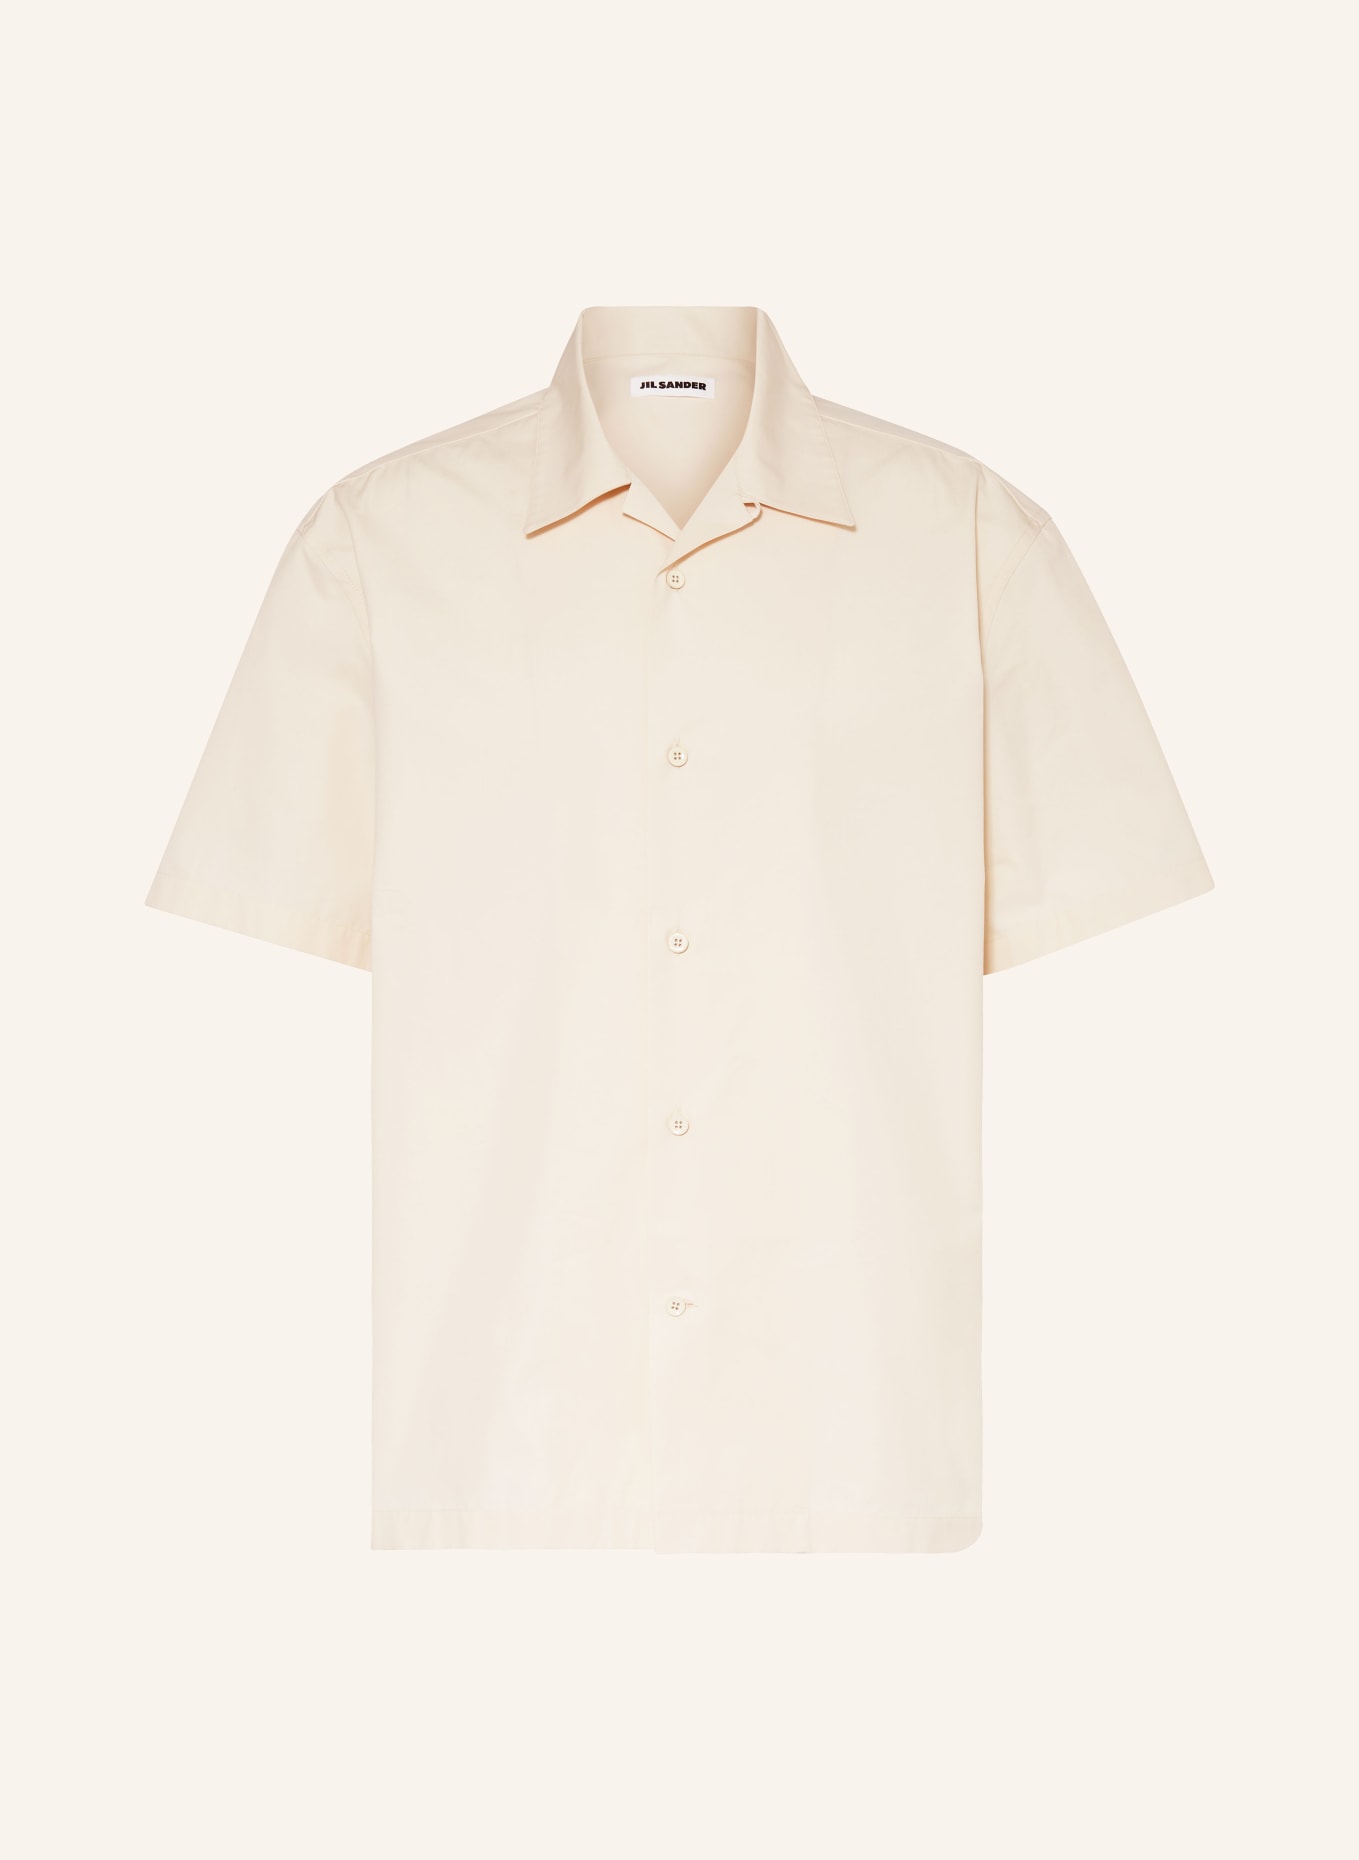 JIL SANDER Short-sleeve shirt comfort fit, Color: LIGHT BROWN (Image 1)